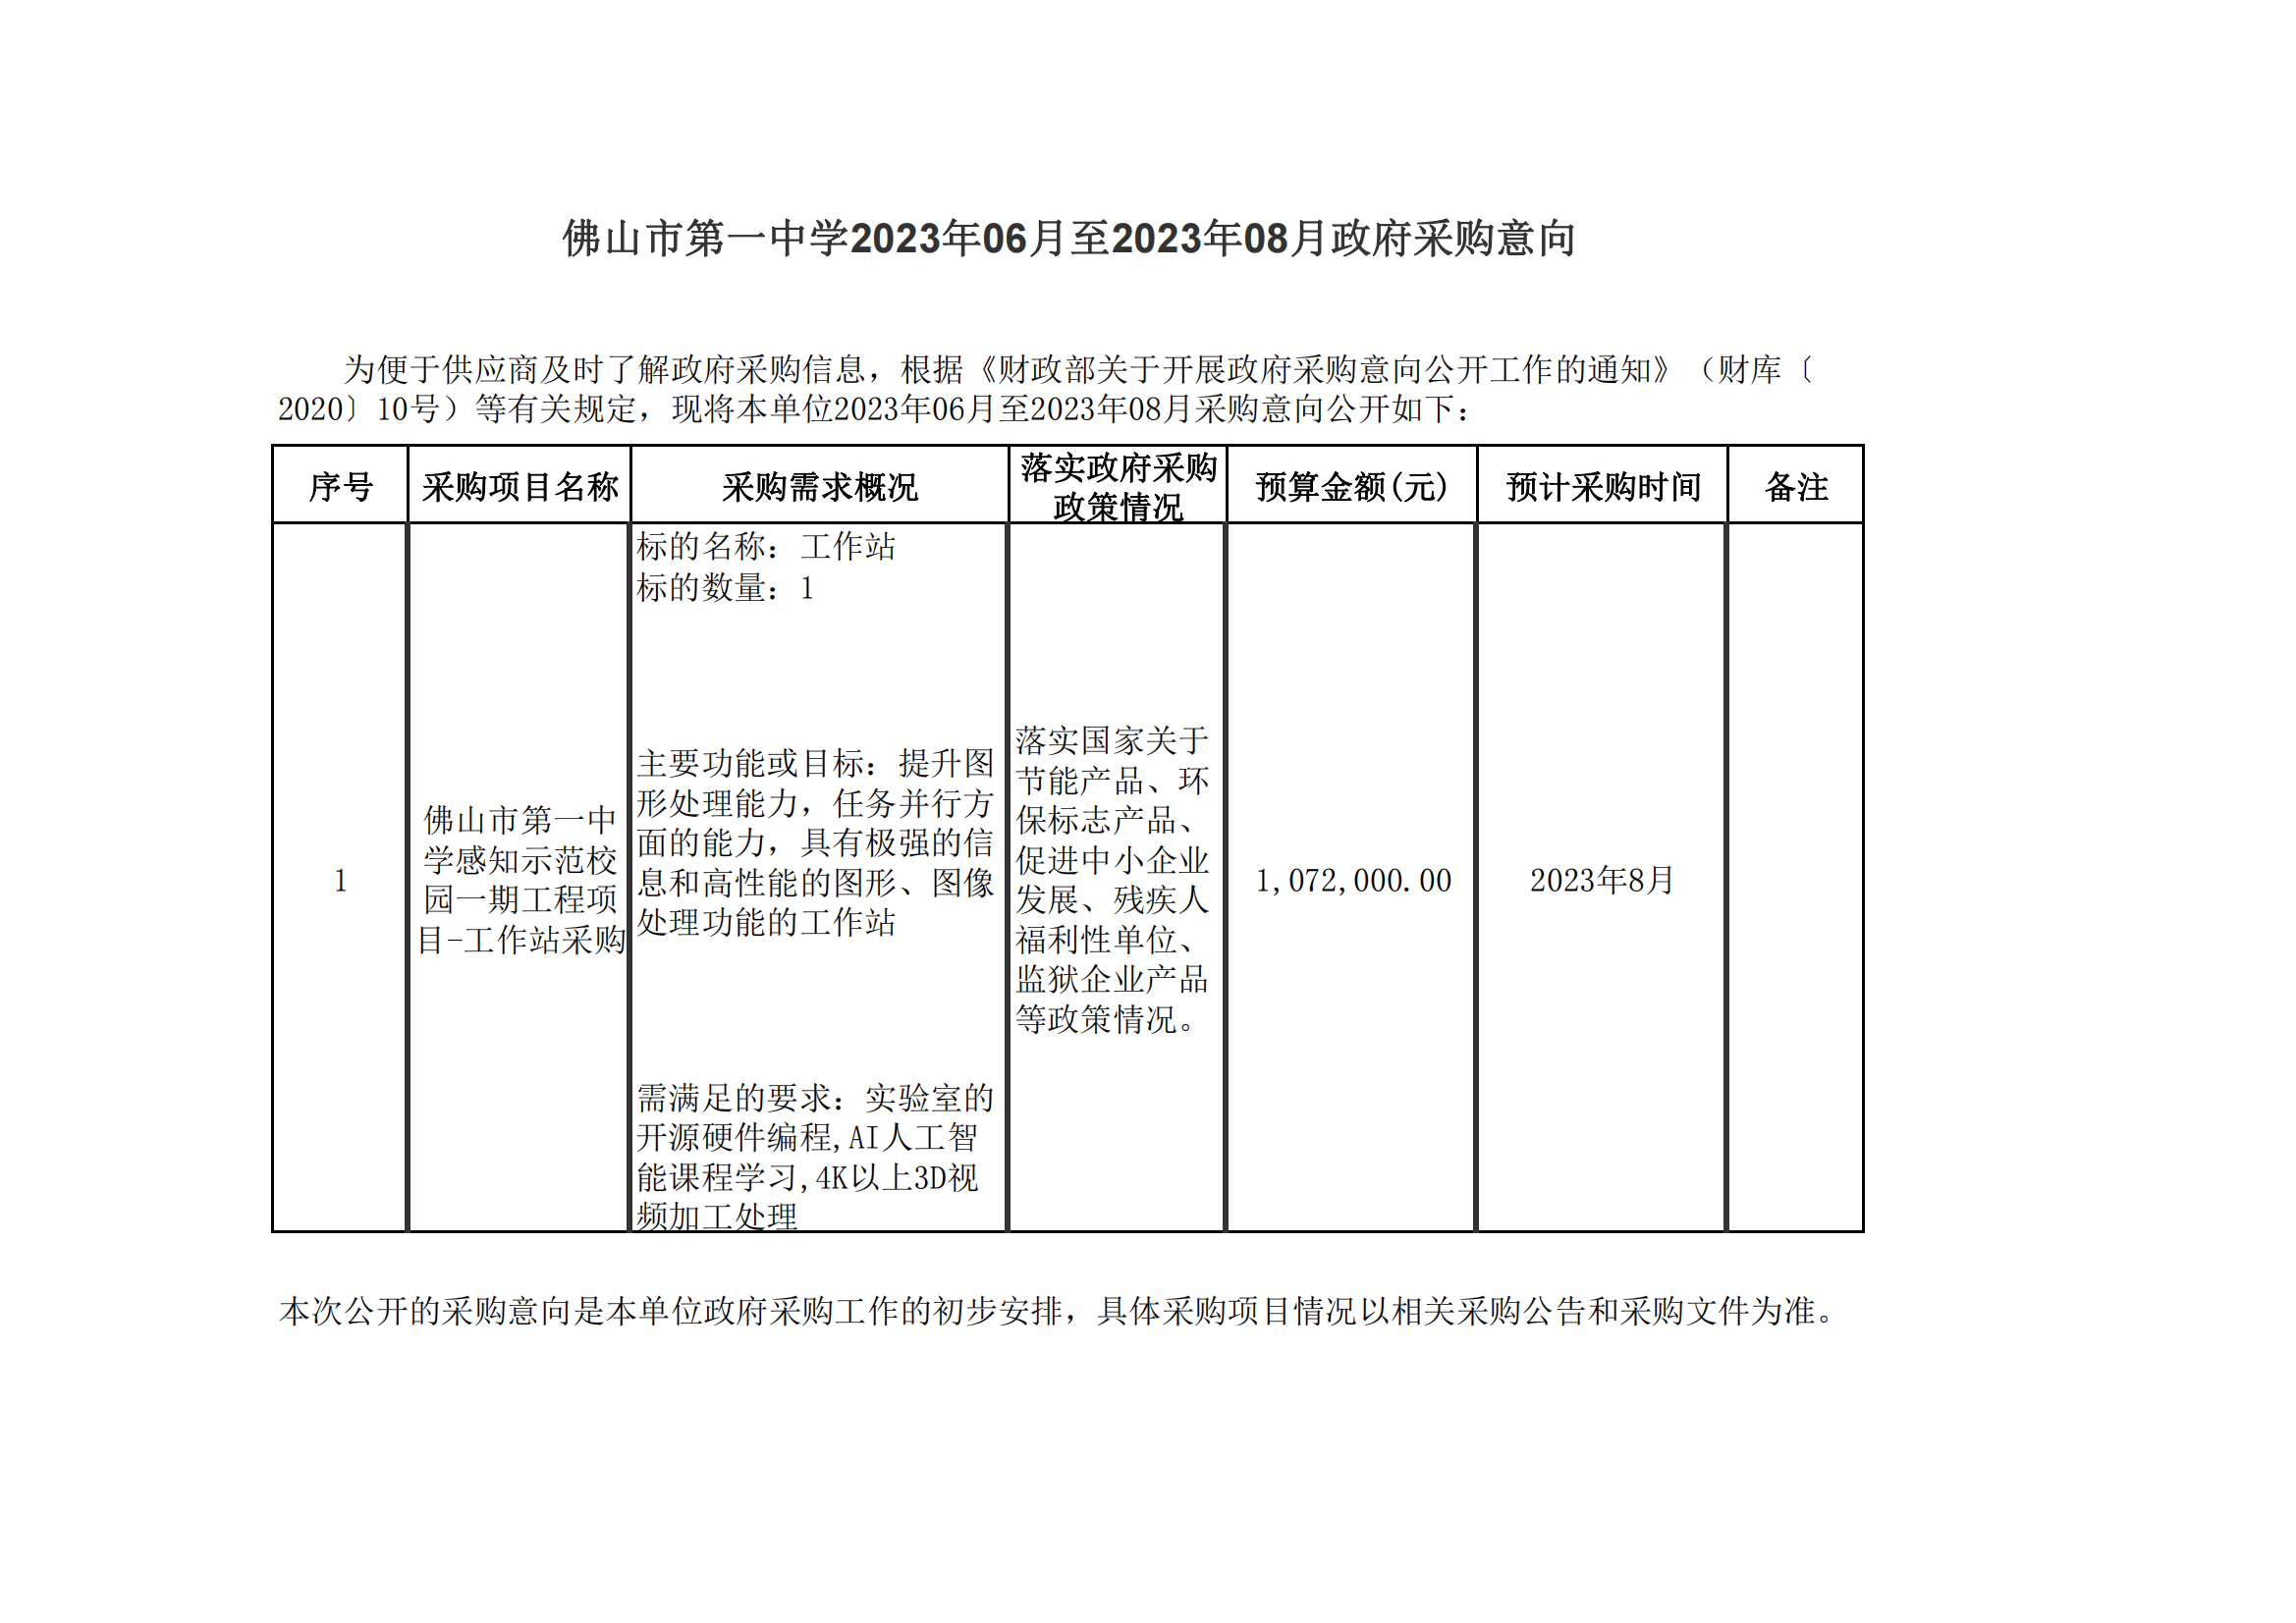 星空体育·(中国)官方网站XINGKONG SPORT2023年06月至2023年08月政府采购意向_00.png